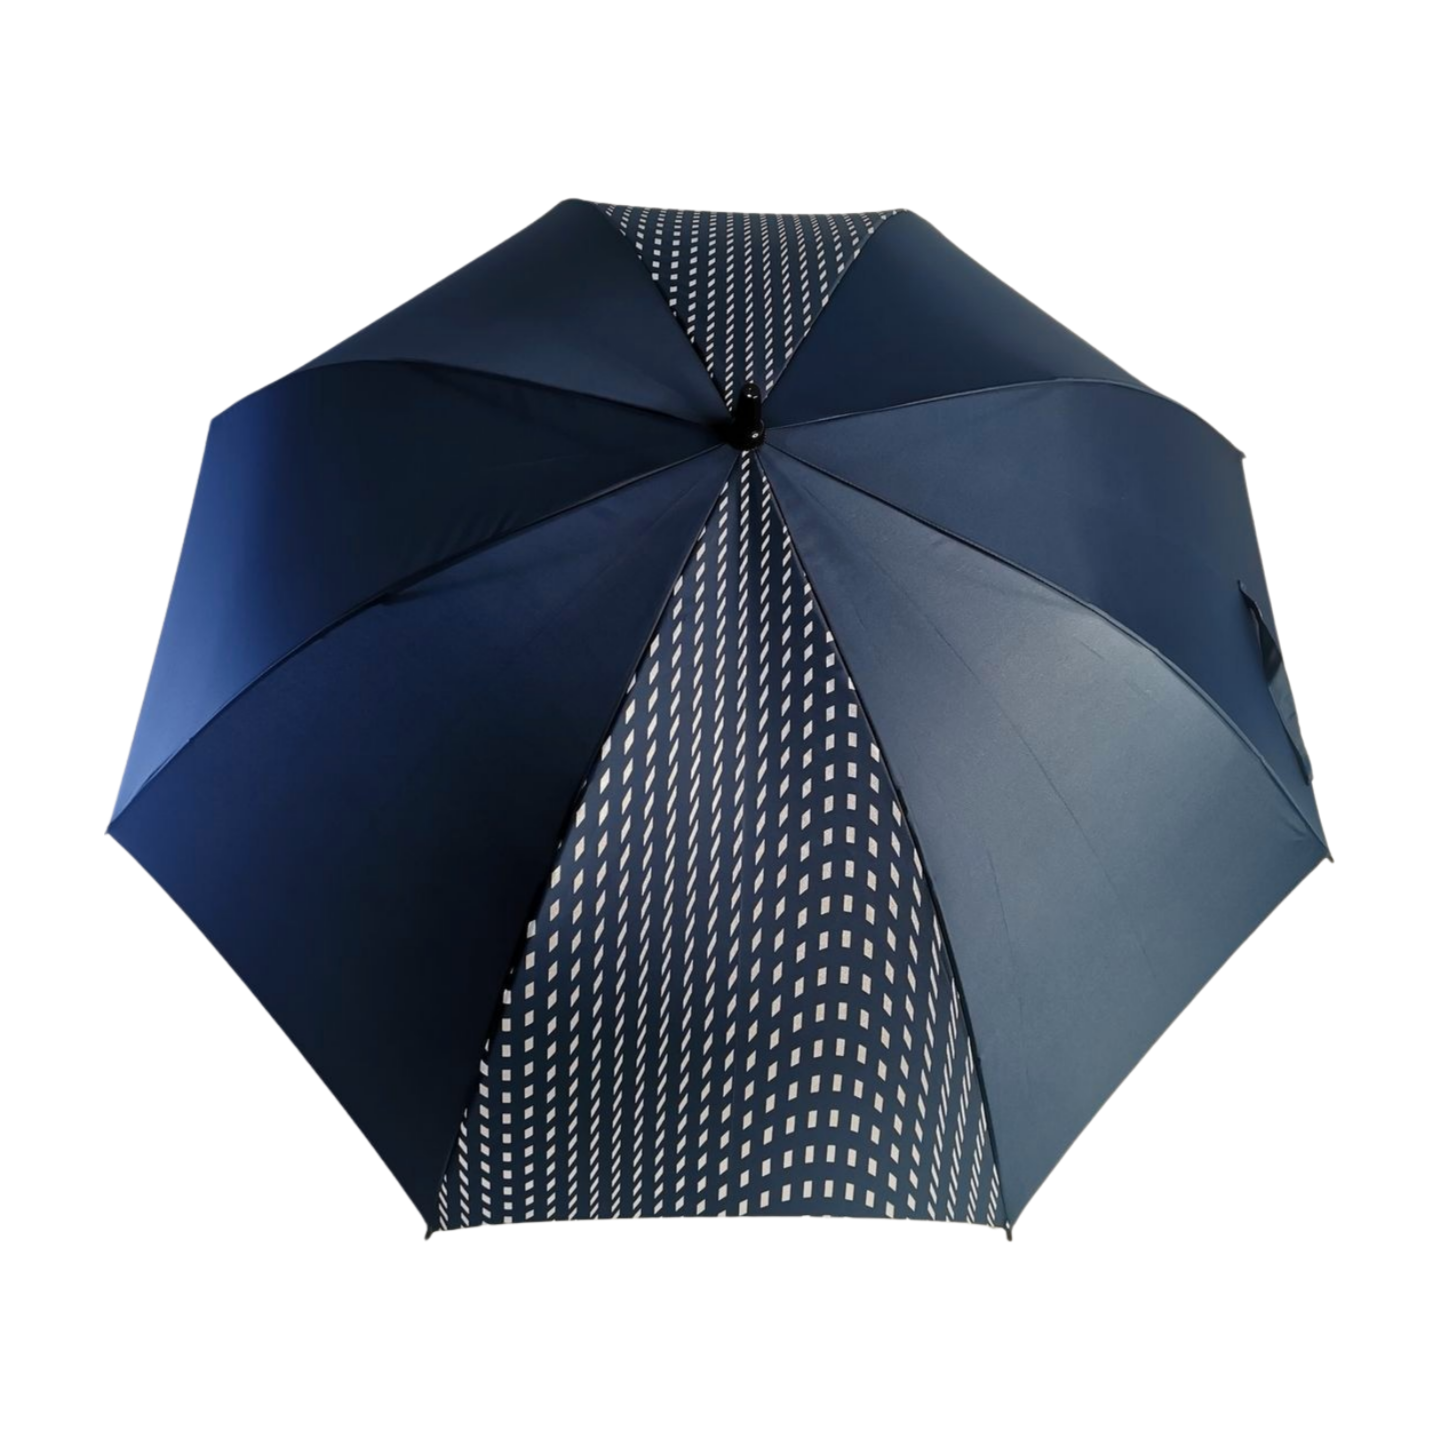 https://www.hodaumbrella.com/golf-umbrella-…ic-open-system-product/